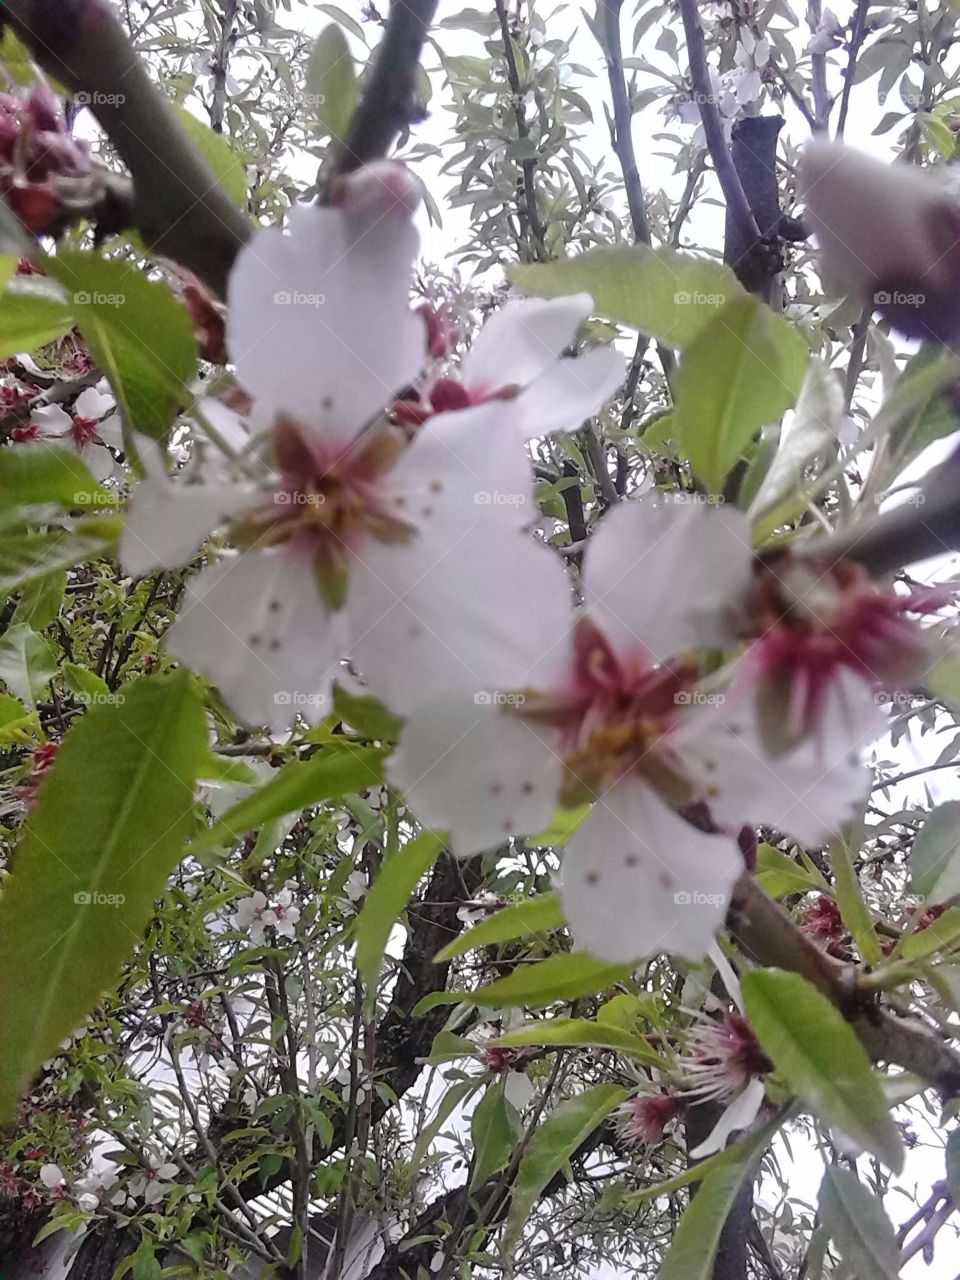 almond blossom. almonds are pretty